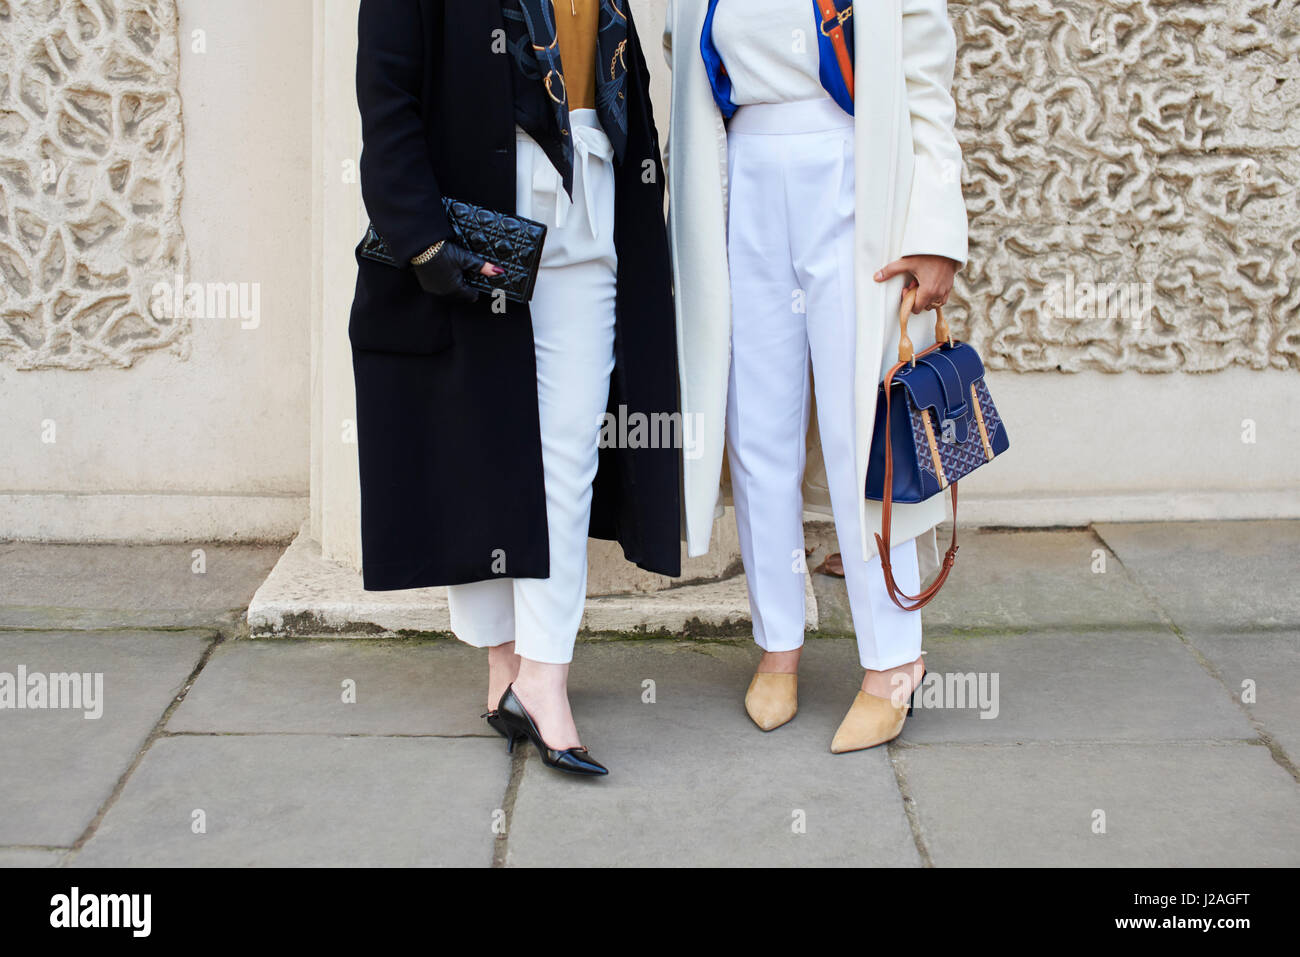 Londra - febbraio, 2017: sezione bassa di due donne in strada tenendo borsette, una Chanel pochette sulla sinistra, mentre la donna sulla destra indossa una cintura Chopard, durante la London Fashion Week, orizzontale, vista frontale Foto Stock